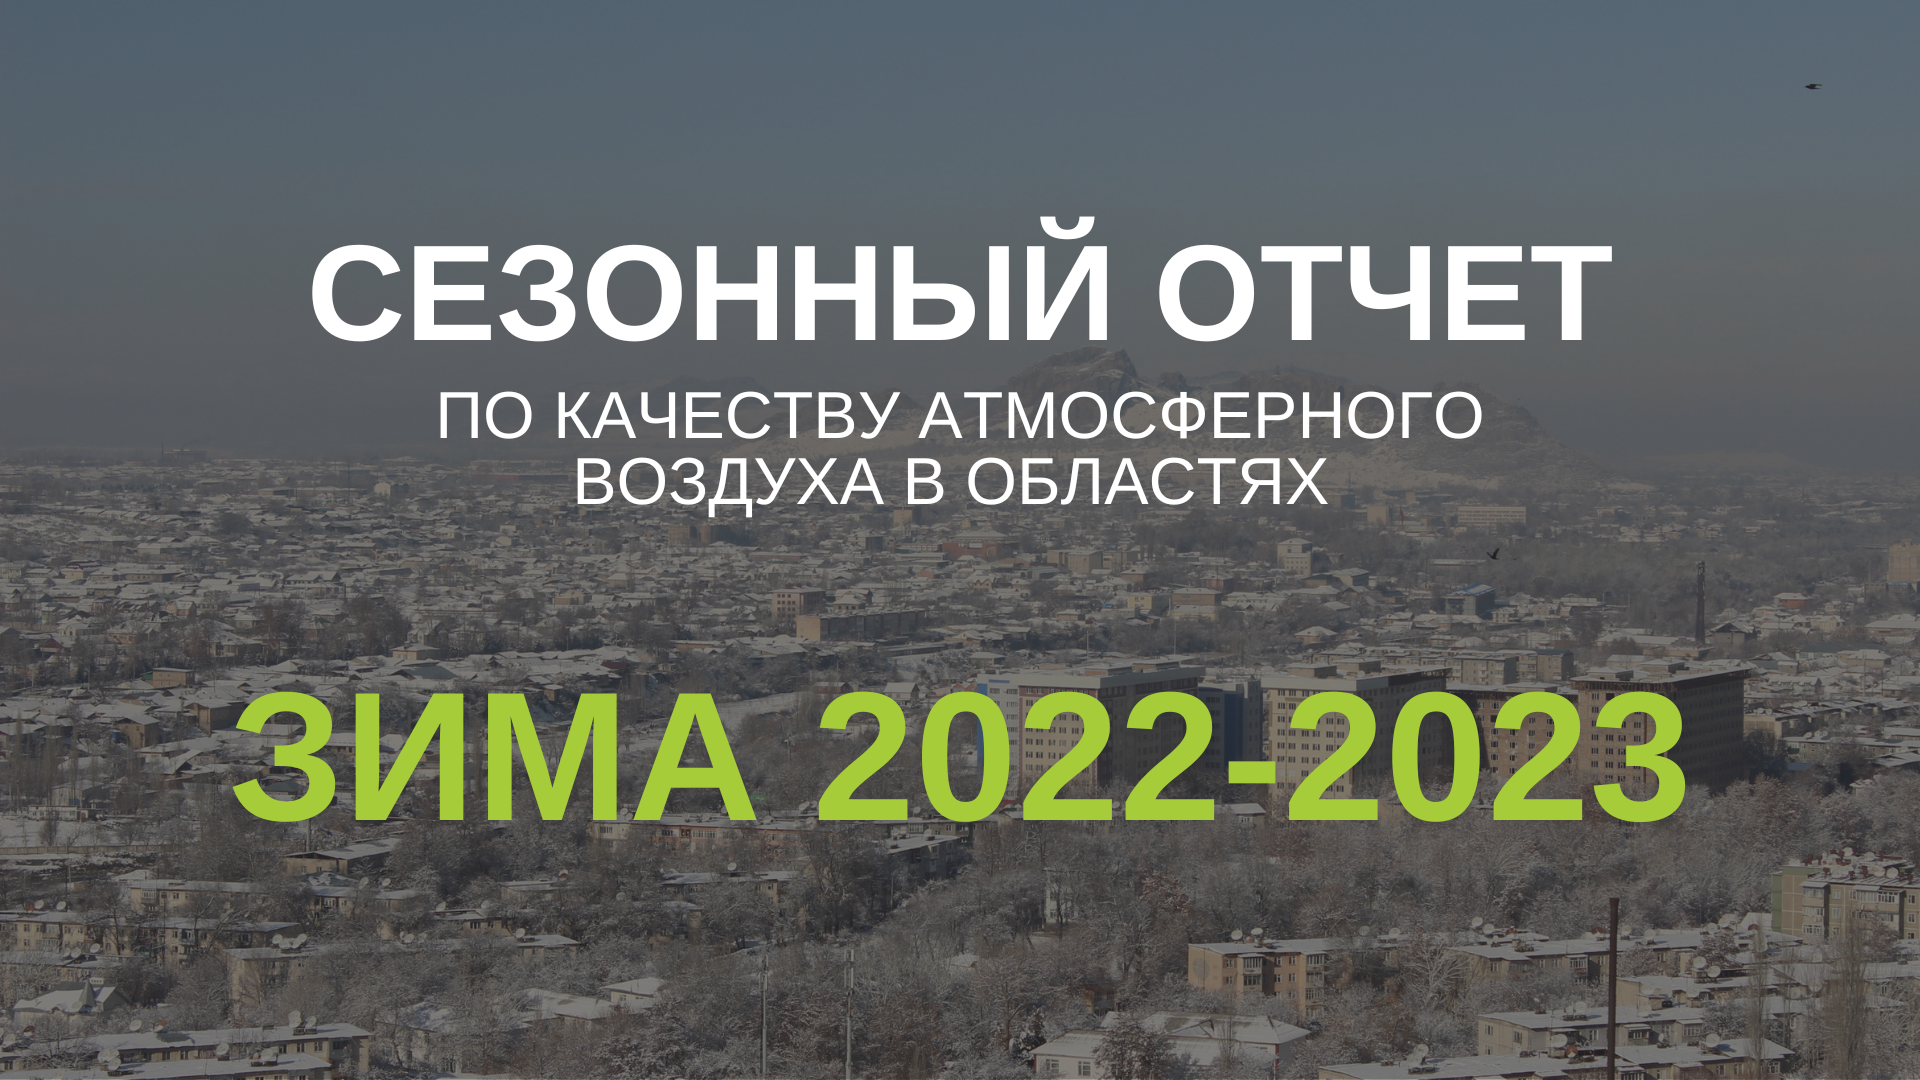 Зима 2022-2023. Сезонный отчет по качеству атмосферного воздуха в областях и вкрупных регионах Кыргызстана